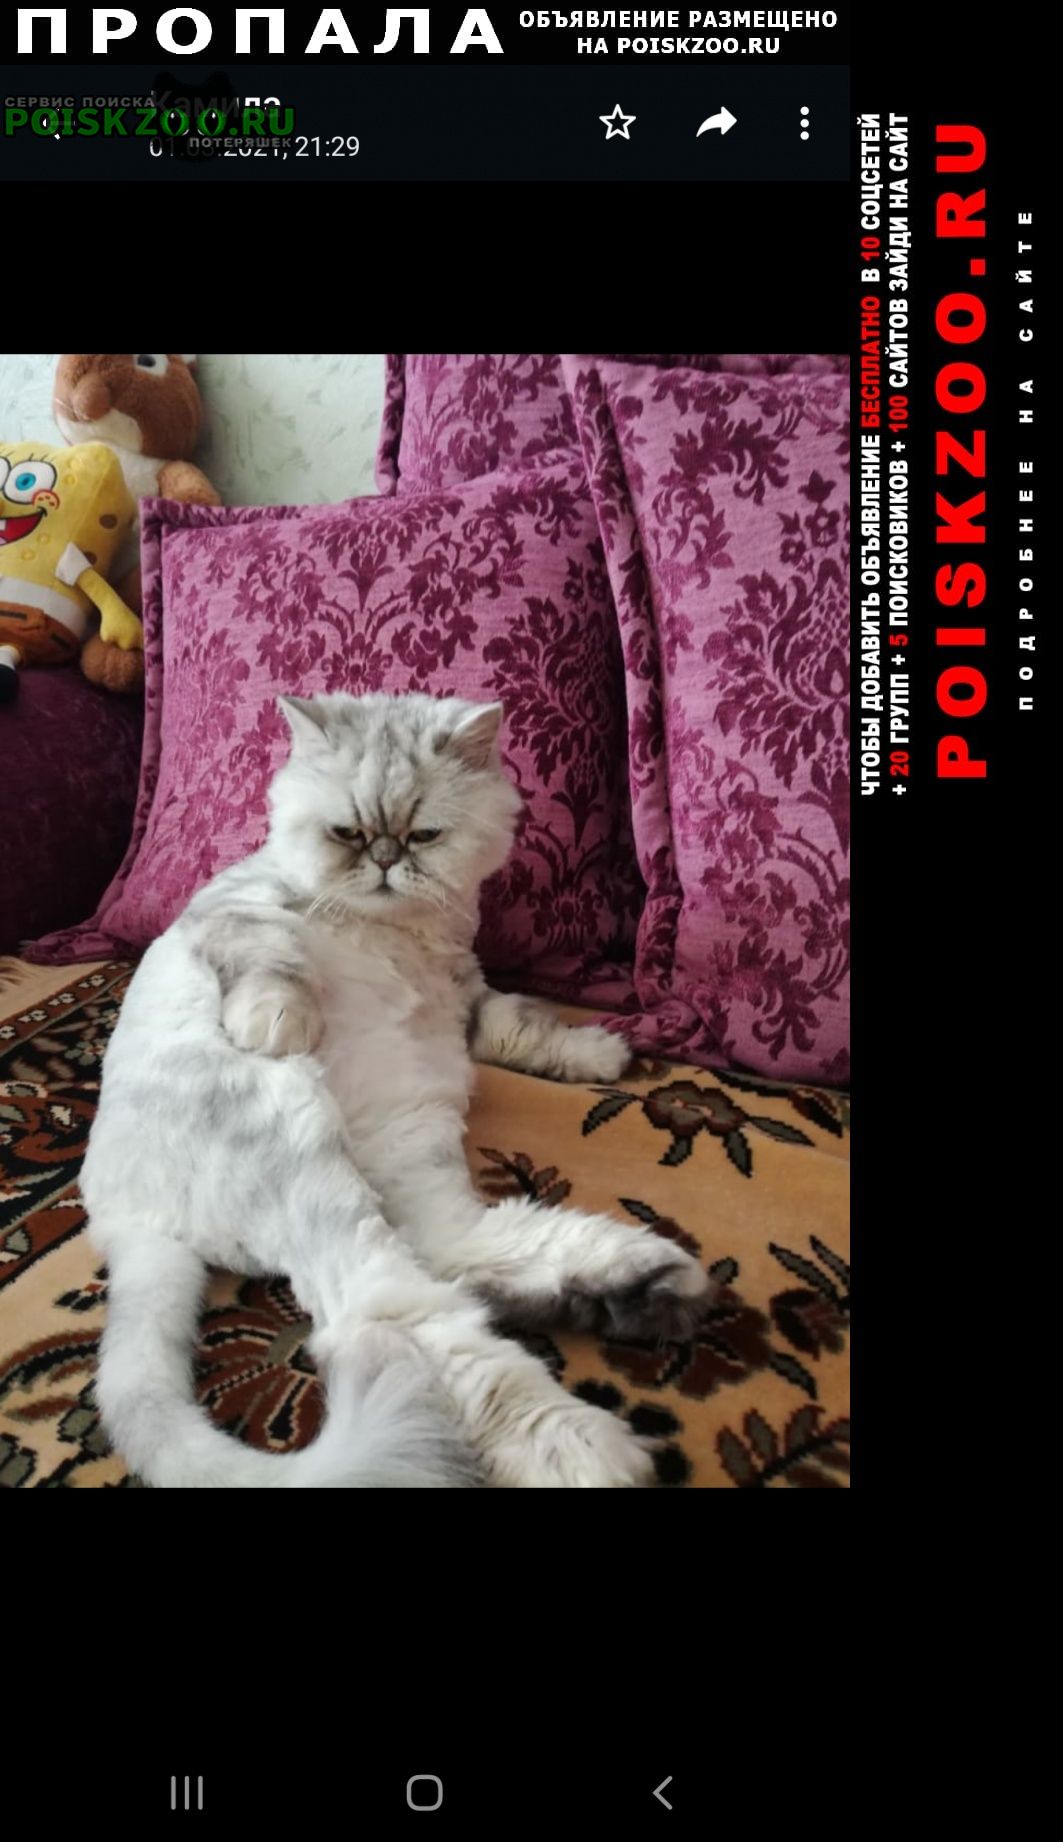 Пропала кошка район зигзага, нашедшему- вознаграждение Уральск Западно-Казахстанская обл.